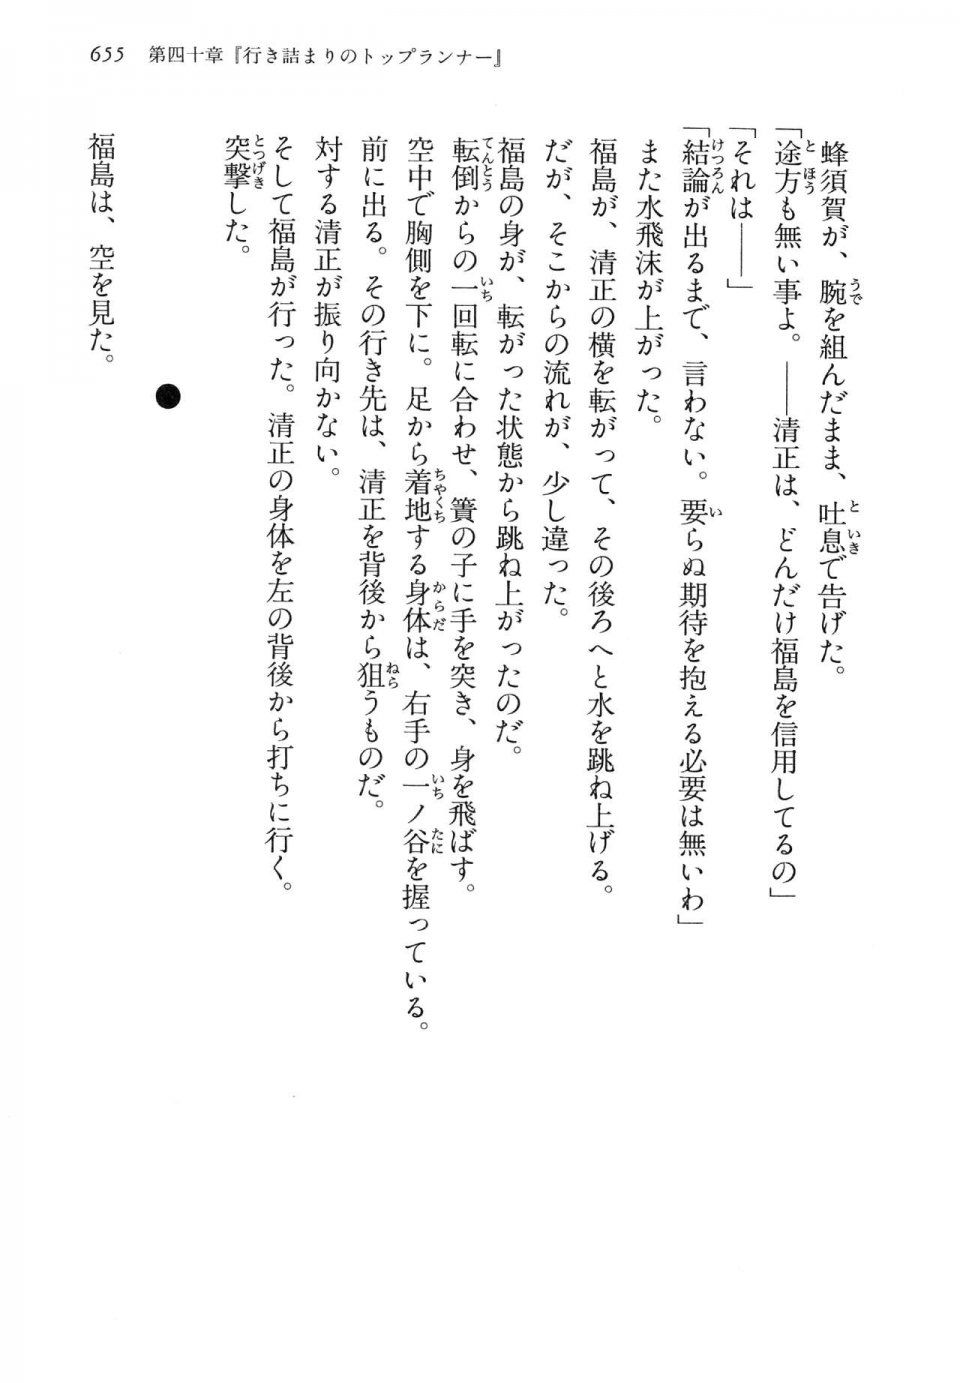 Kyoukai Senjou no Horizon LN Vol 14(6B) - Photo #655